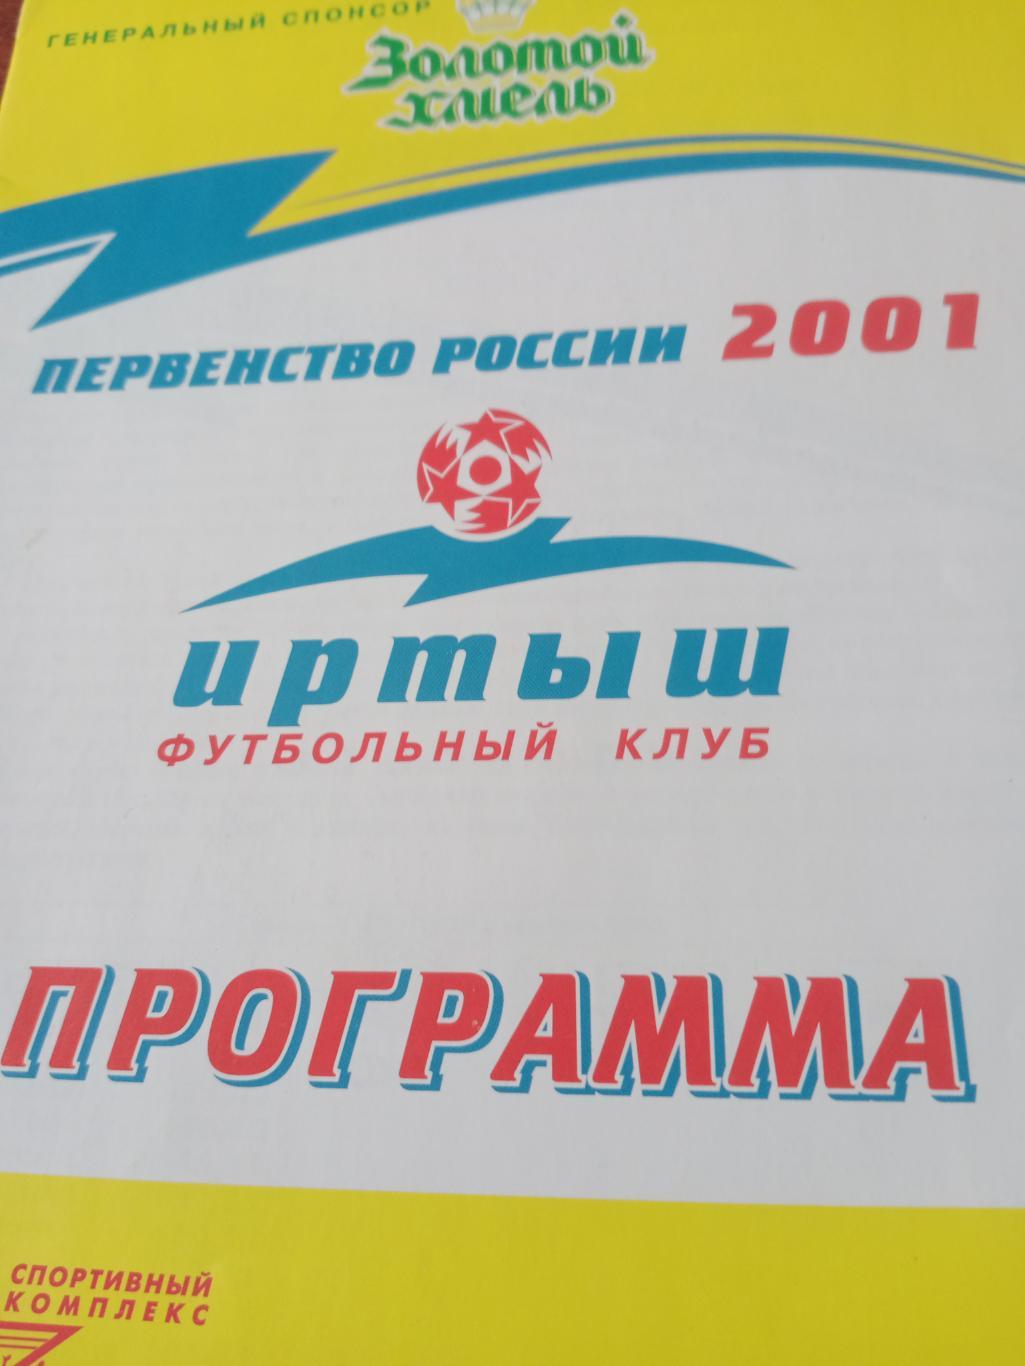 СК ЖДВ Иртыш Омск - Лукойл Челябинск. 28 августа 2001 год